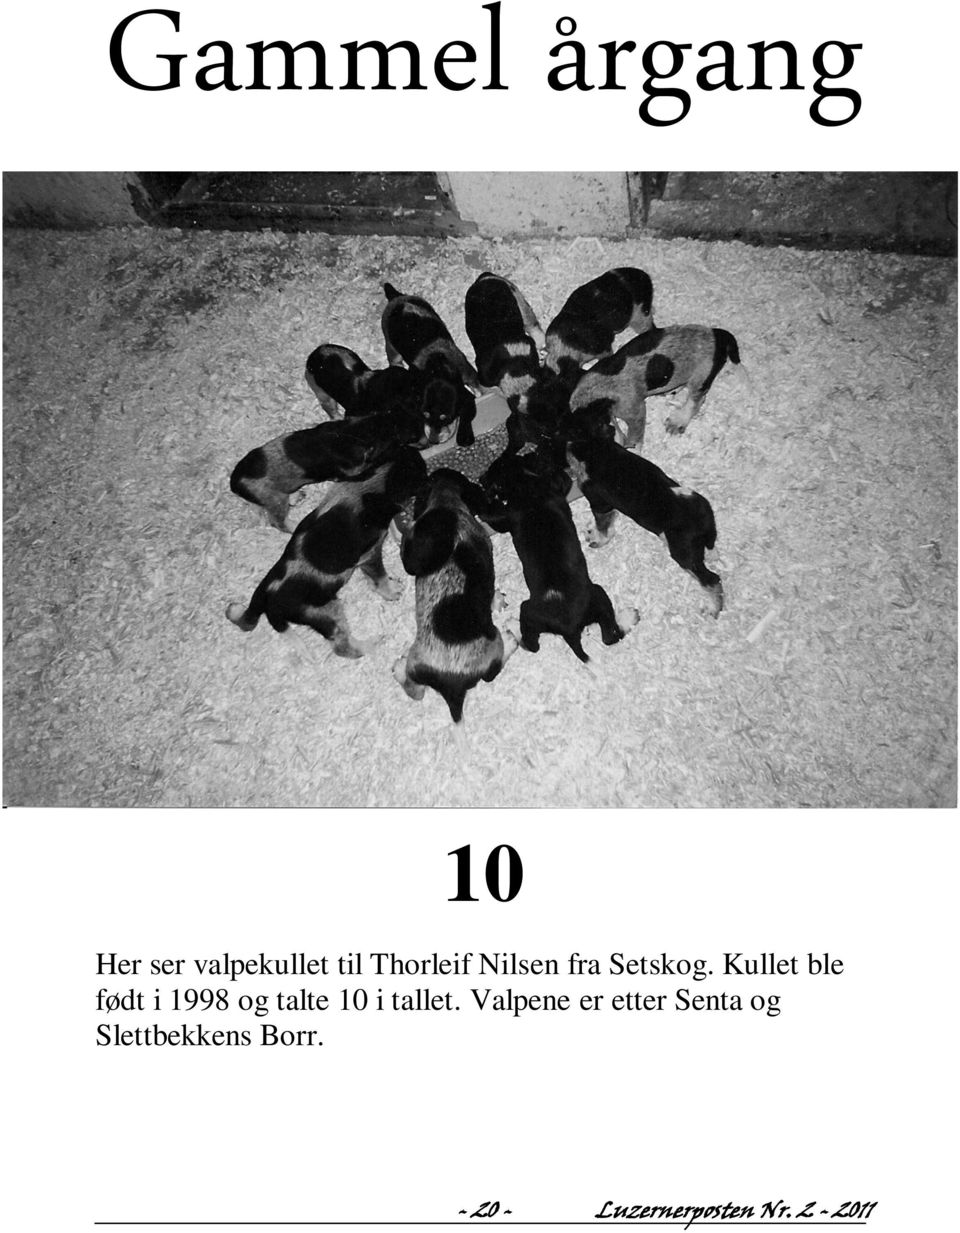 Kullet ble født i 1998 og talte 10 i tallet.